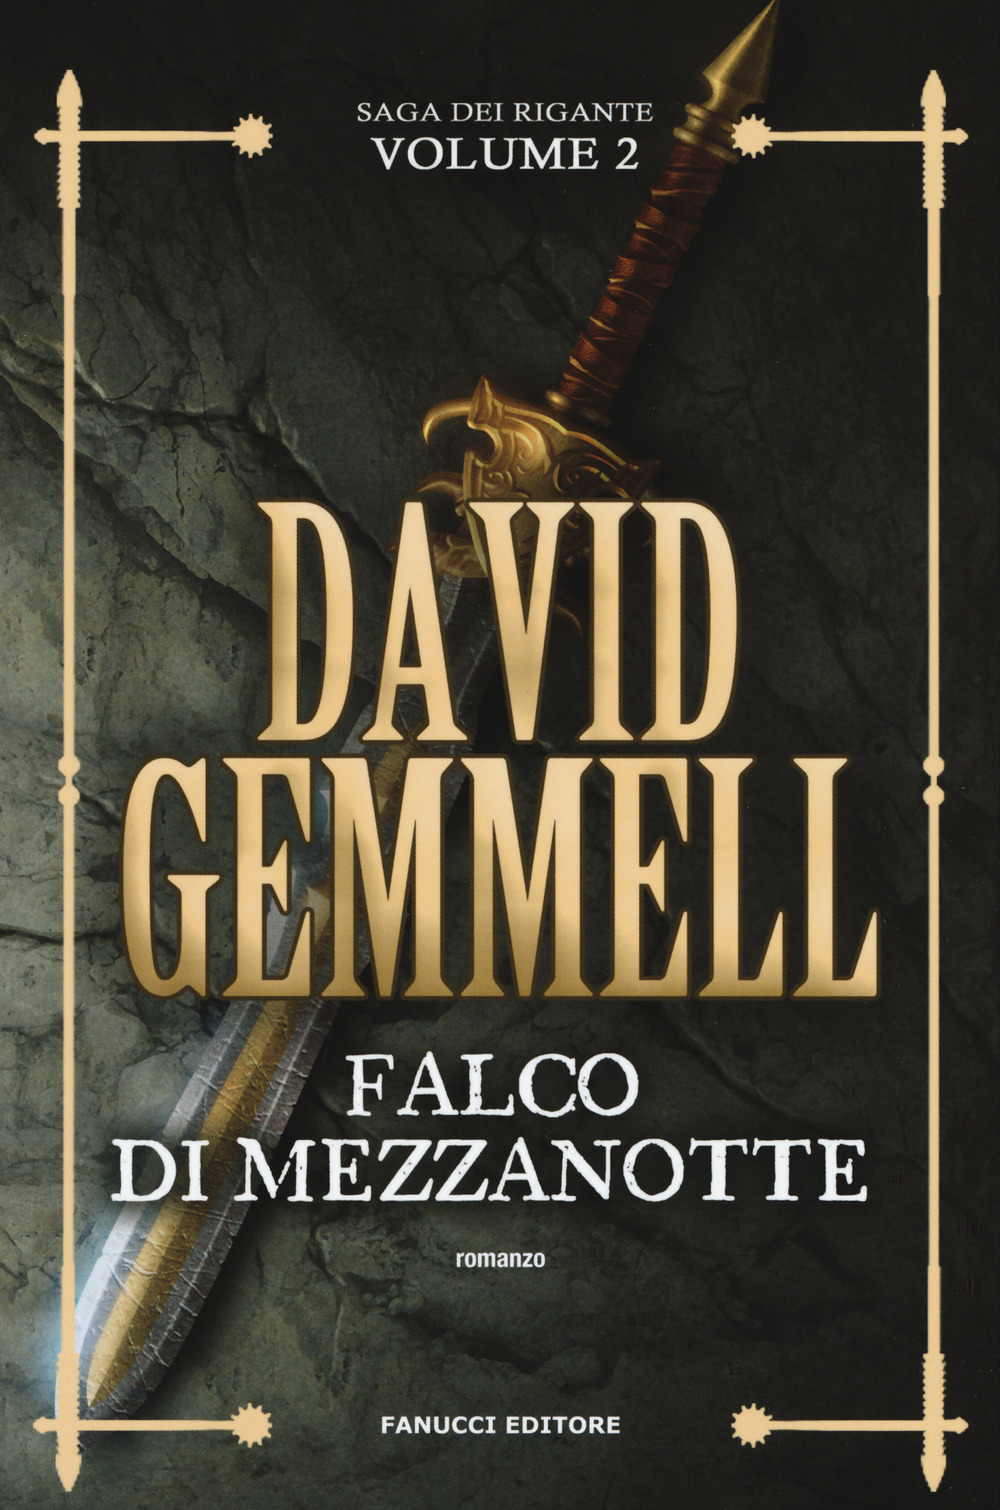 Libri David Gemmell - Falco Di Mezzanotte. La Saga Dei Rigante Vol 02 NUOVO SIGILLATO, EDIZIONE DEL 21/11/2019 SUBITO DISPONIBILE